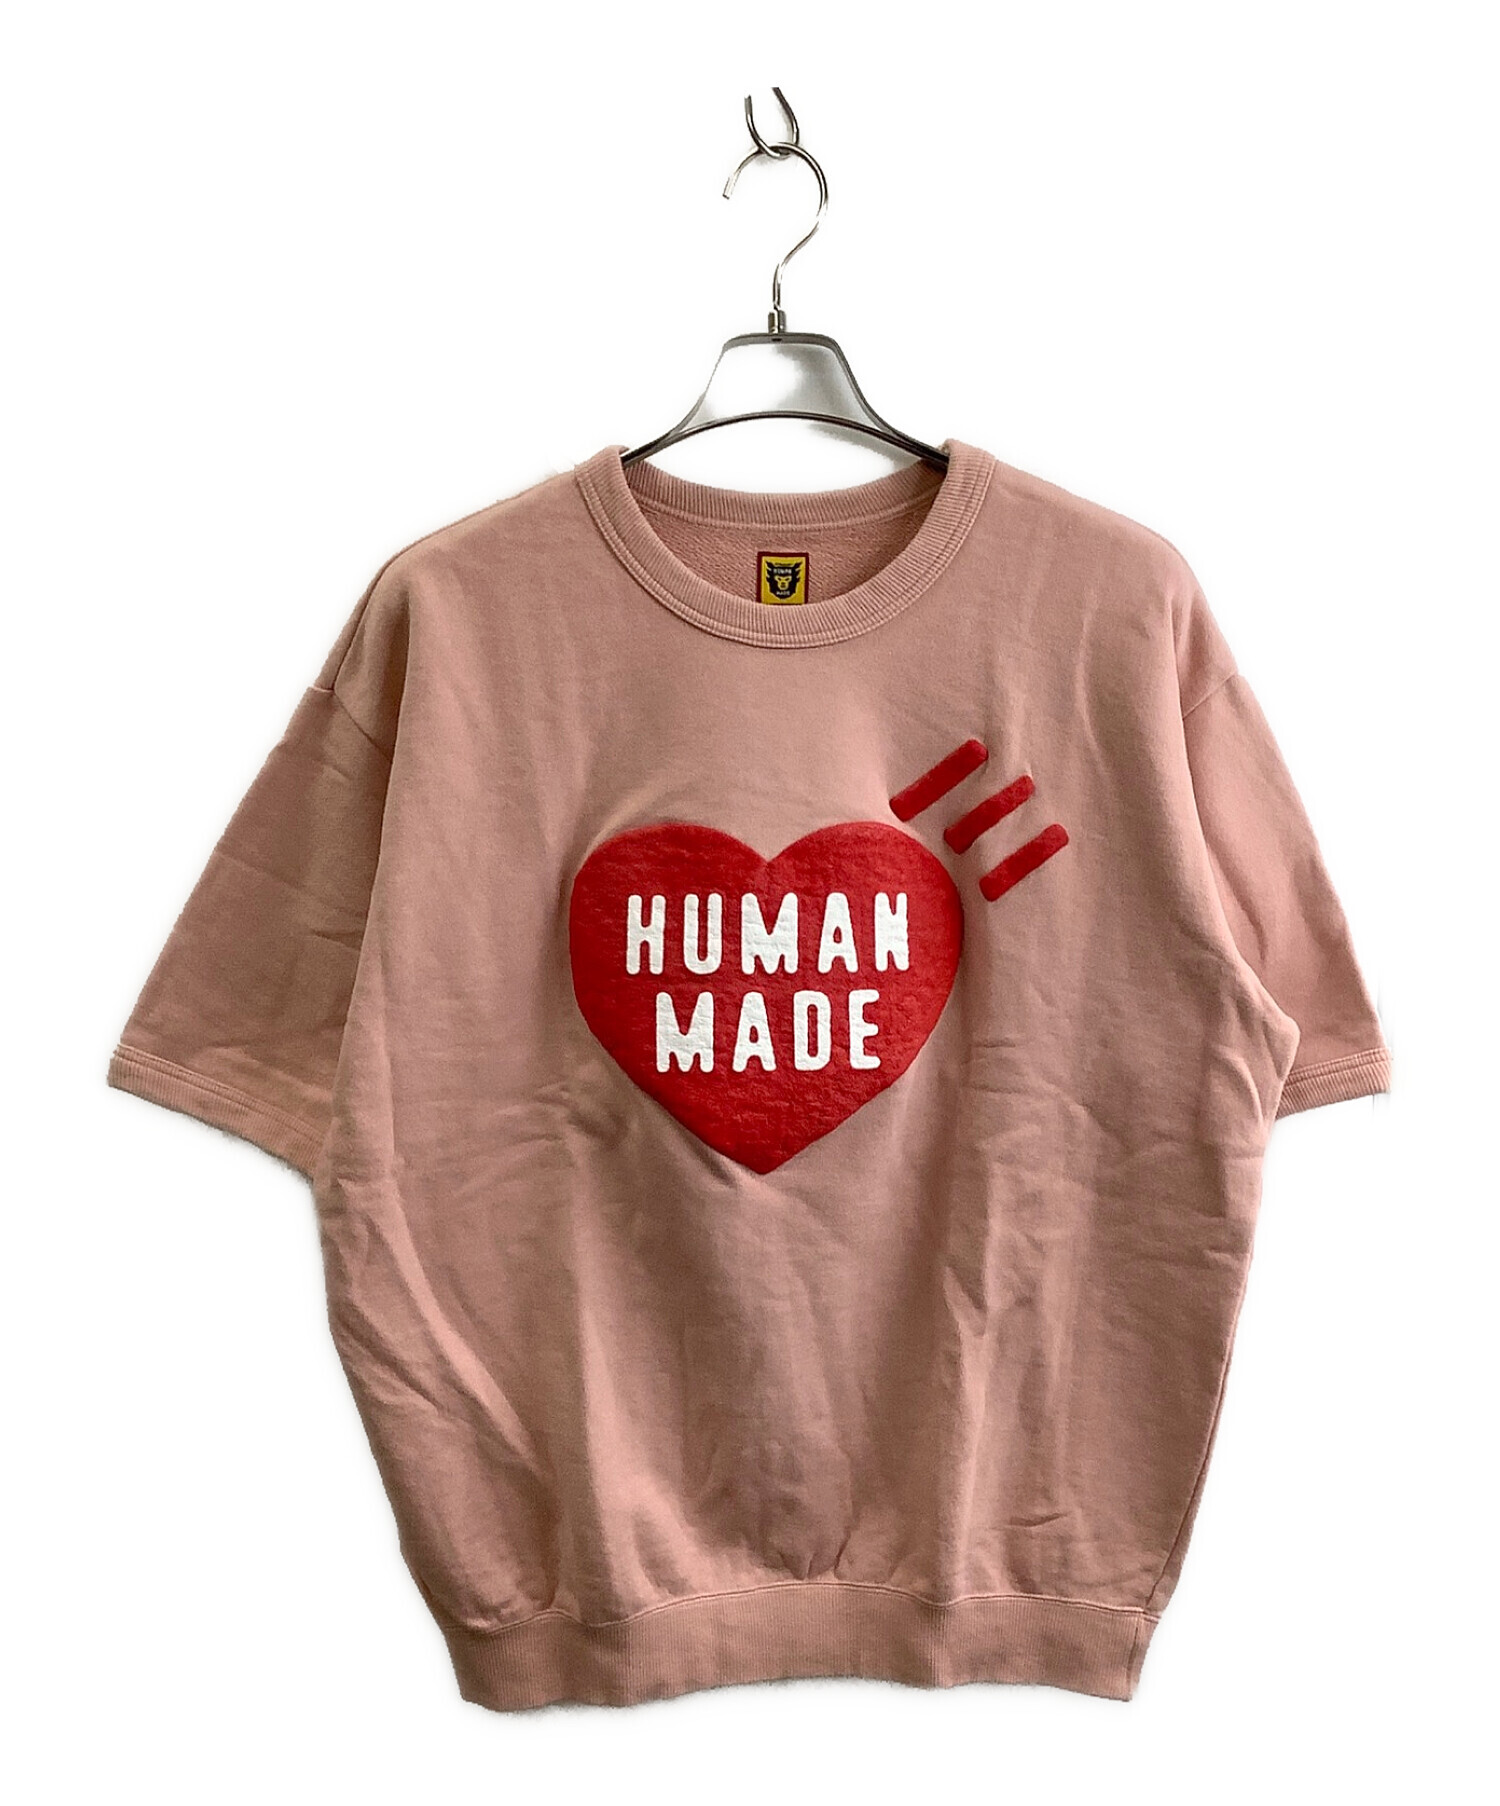 HUMAN MADE (ヒューマンメイド) スウェット ピンク サイズ:XL